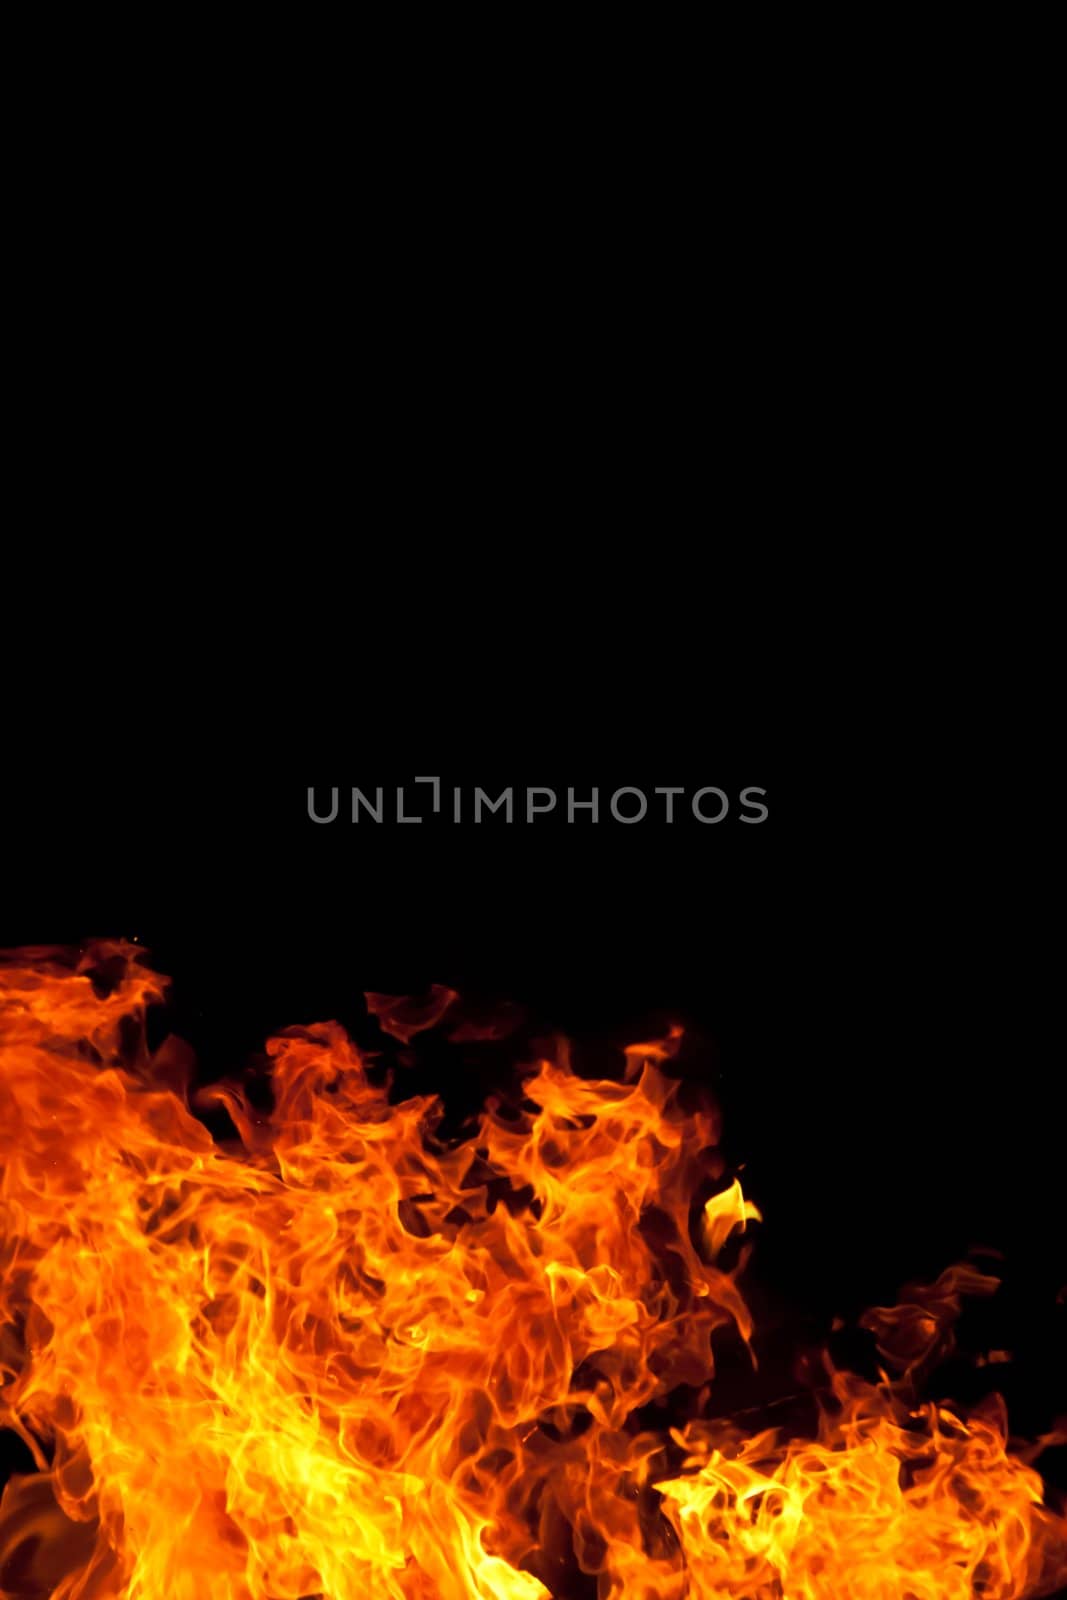 Fire On Black by RachelD32